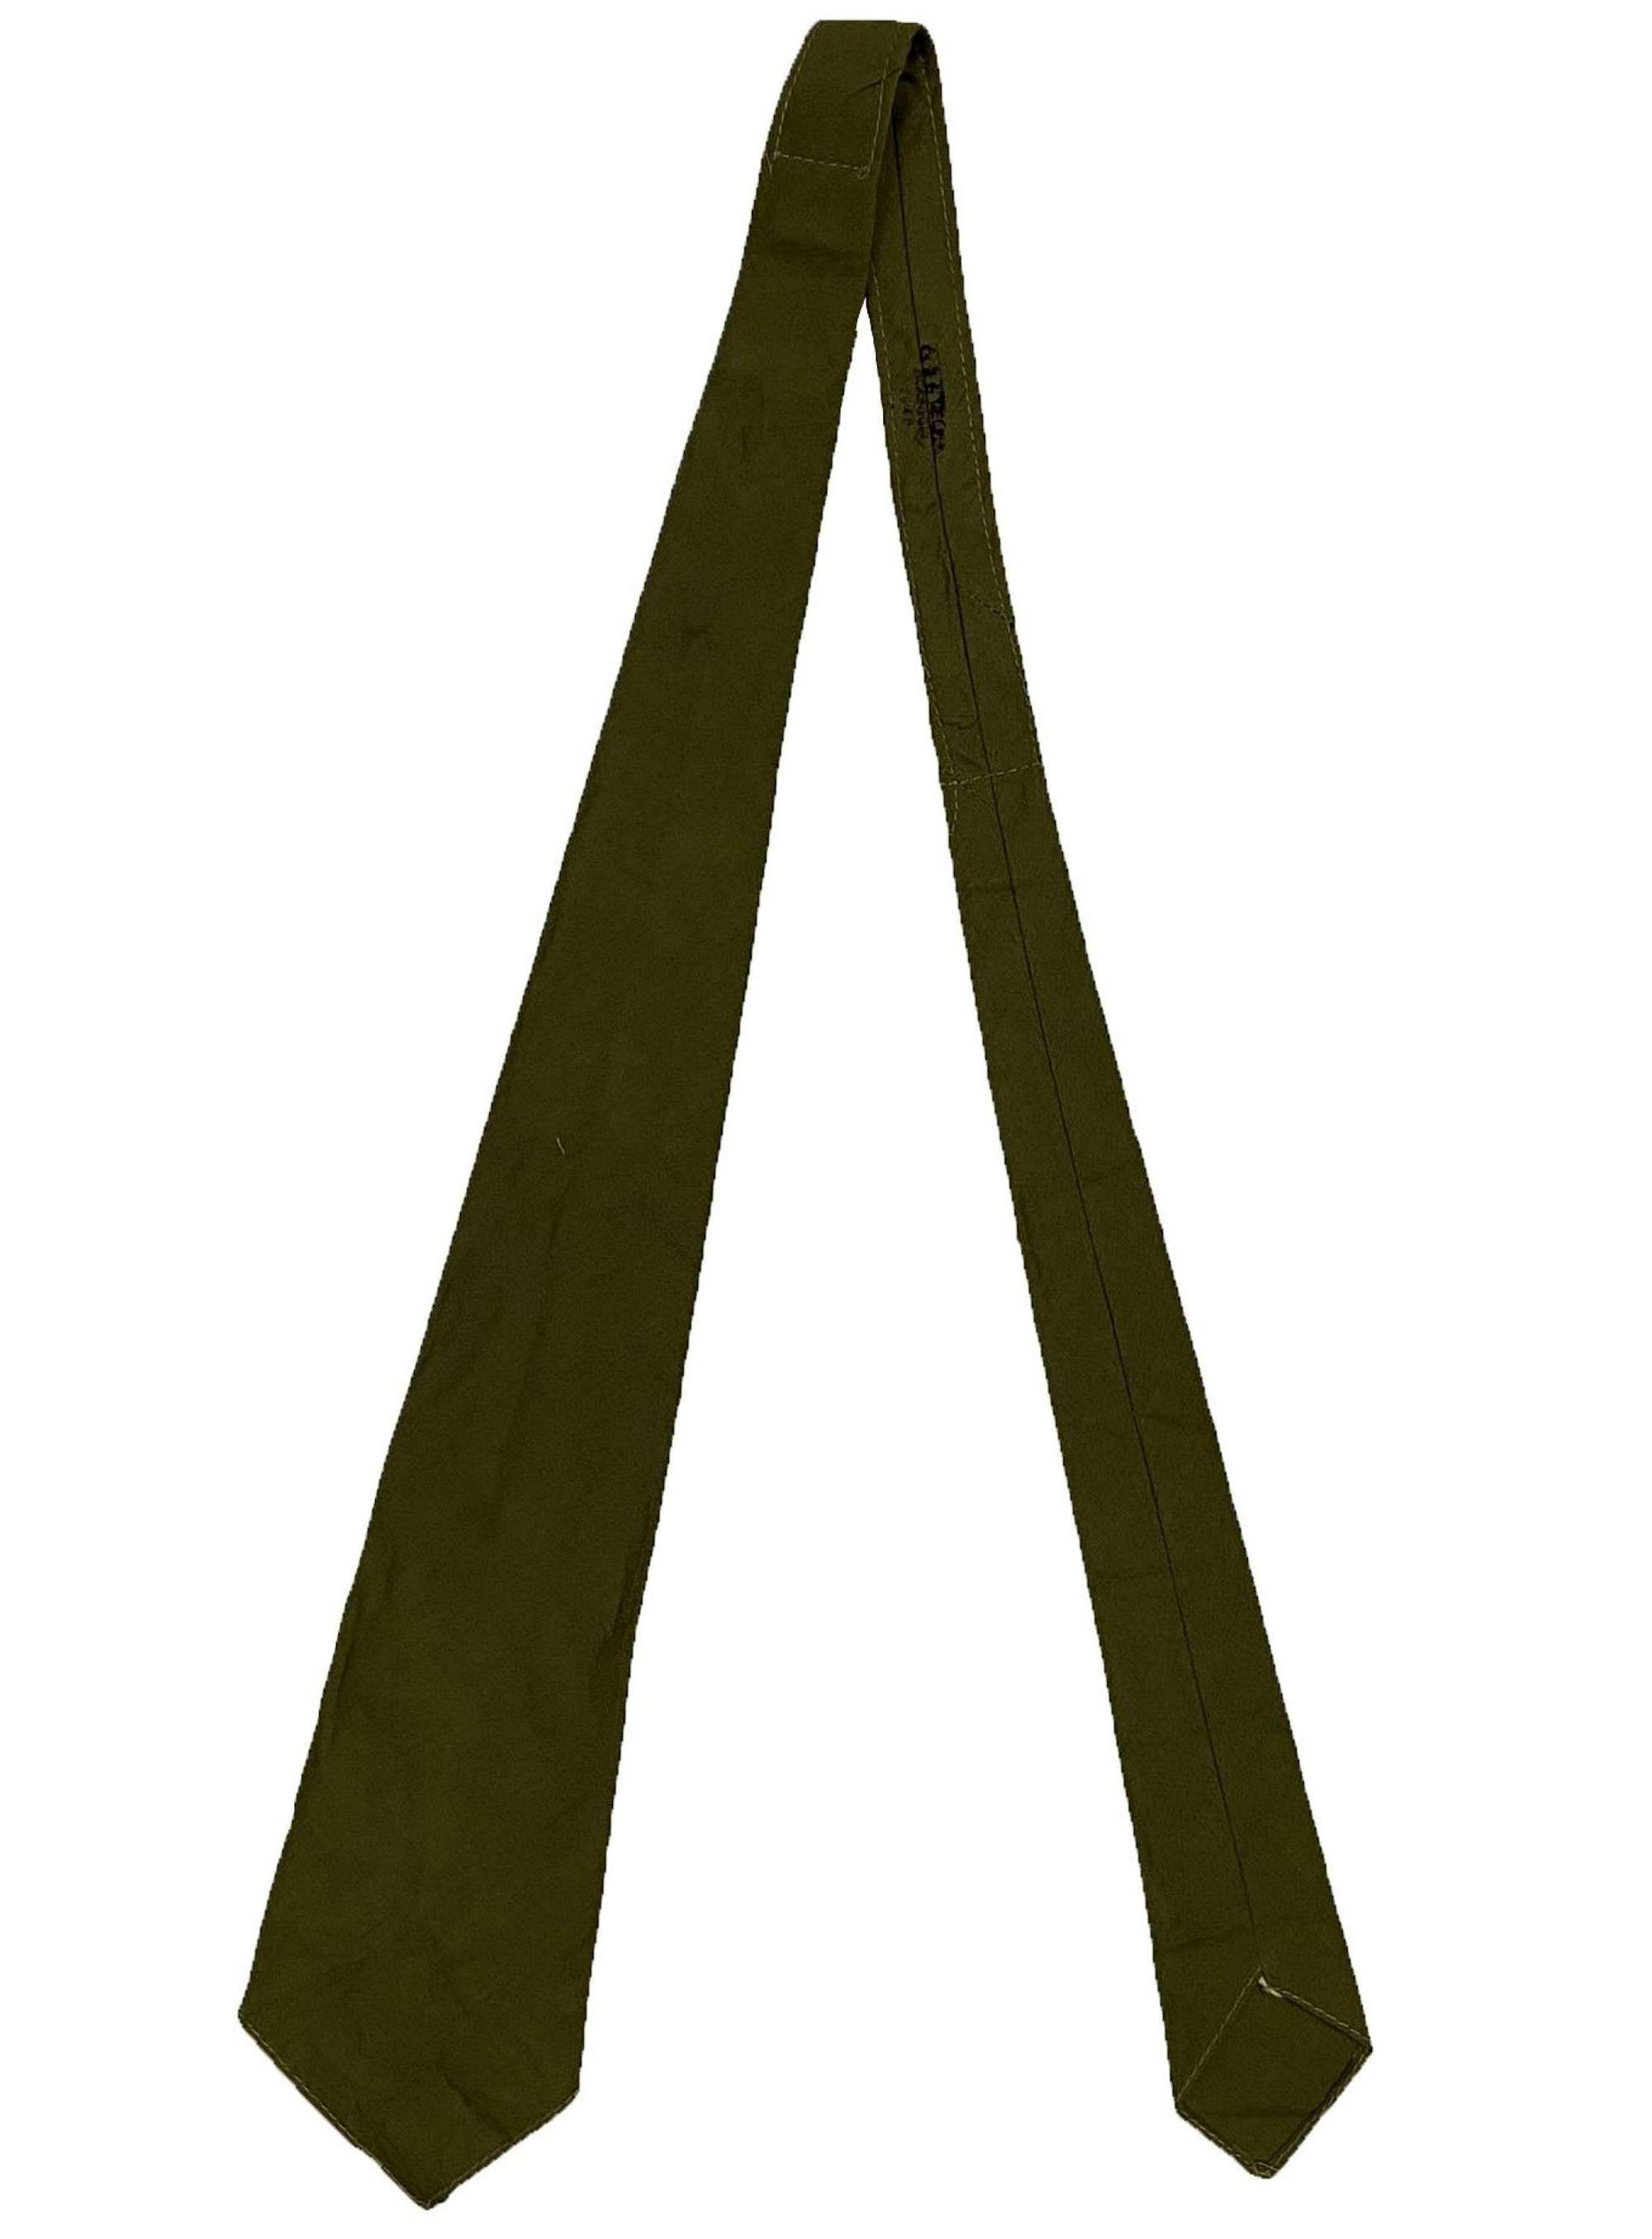 Original 1940 Dated British Army Neck Tie